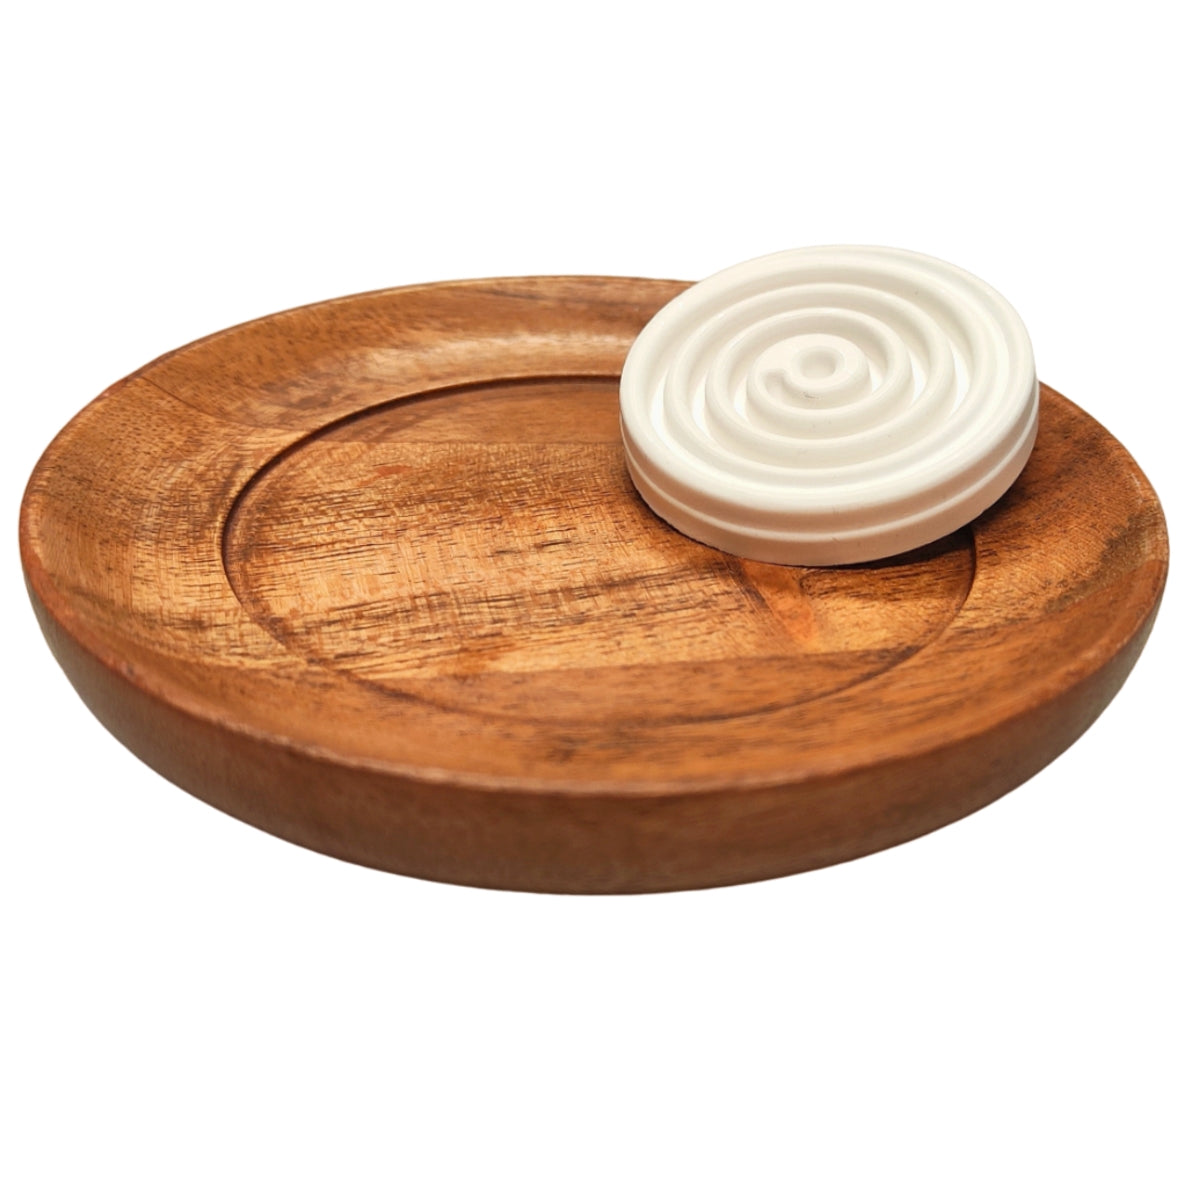 Duftstein Spirale mit Holzteller, für ätherische Aromaöle zur